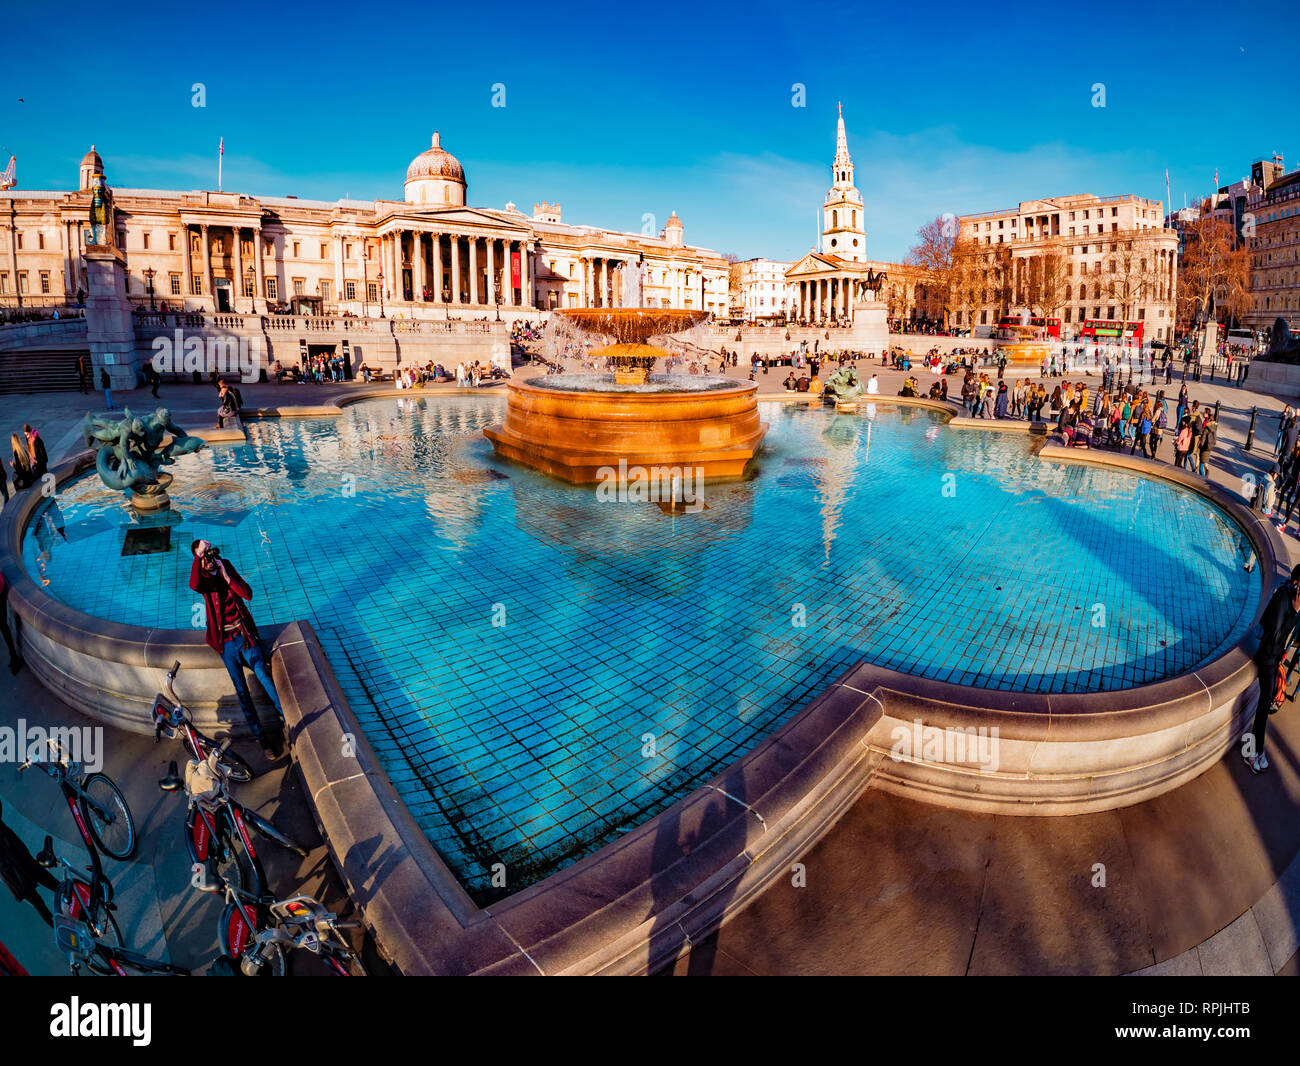 Londra, Inghilterra - Febbraio 14, 2019: Ampia vista della fontana artesiana e persone in visita a Trafalgar Square di Londra in un giorno di sole Foto Stock